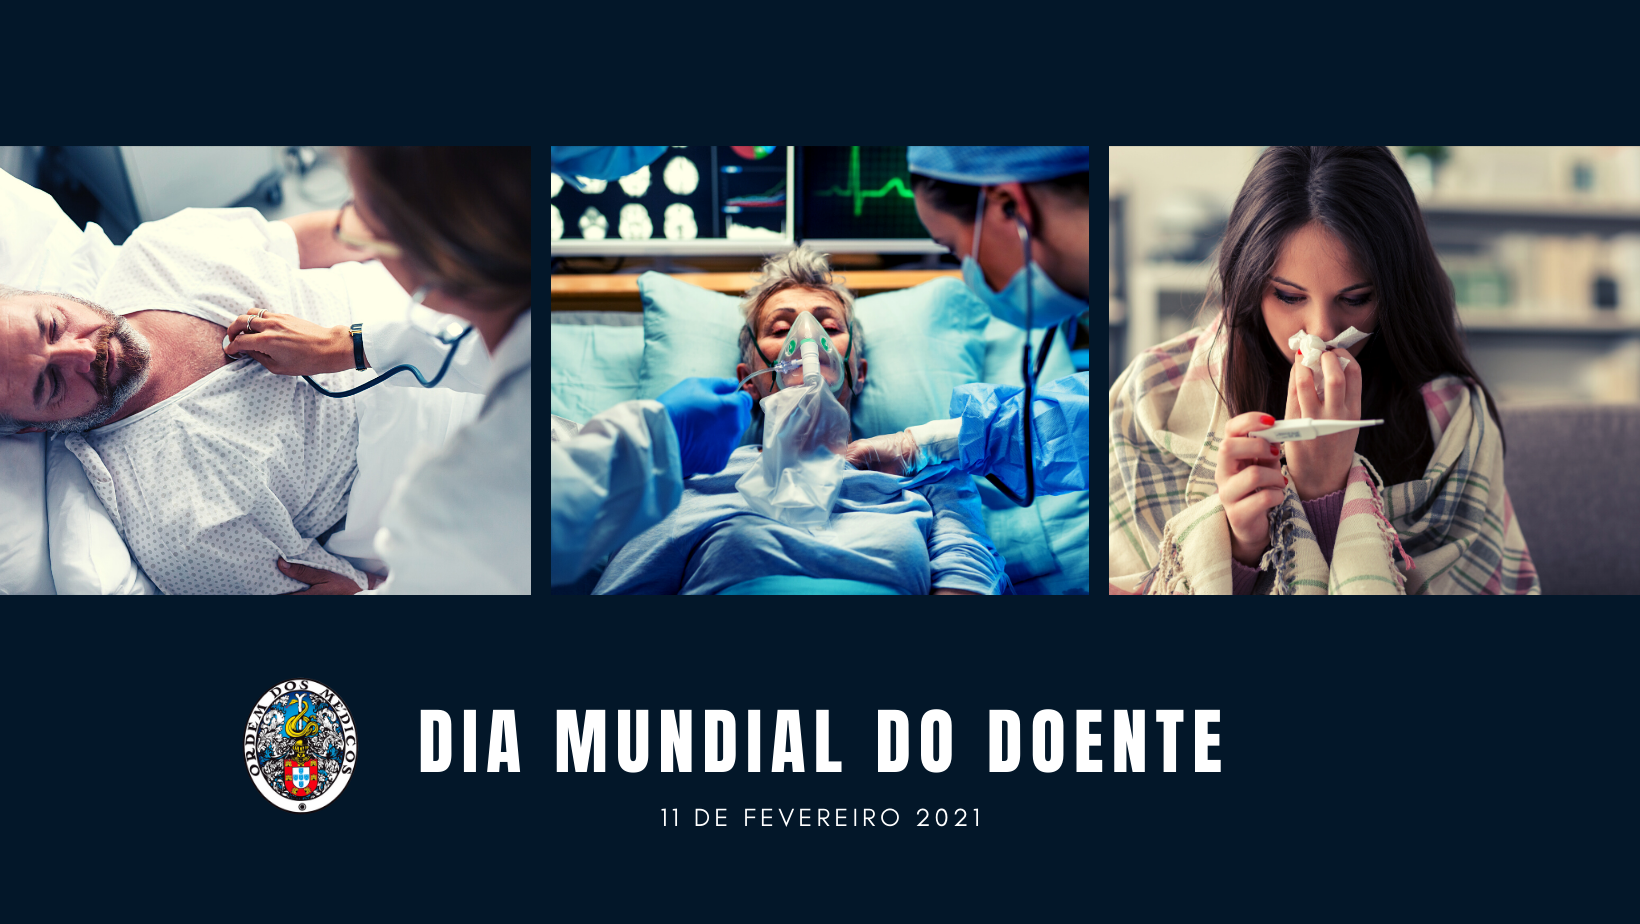 Dia Mundial do Doente 11 de fevereiro 2021 Ordem dos Médicos